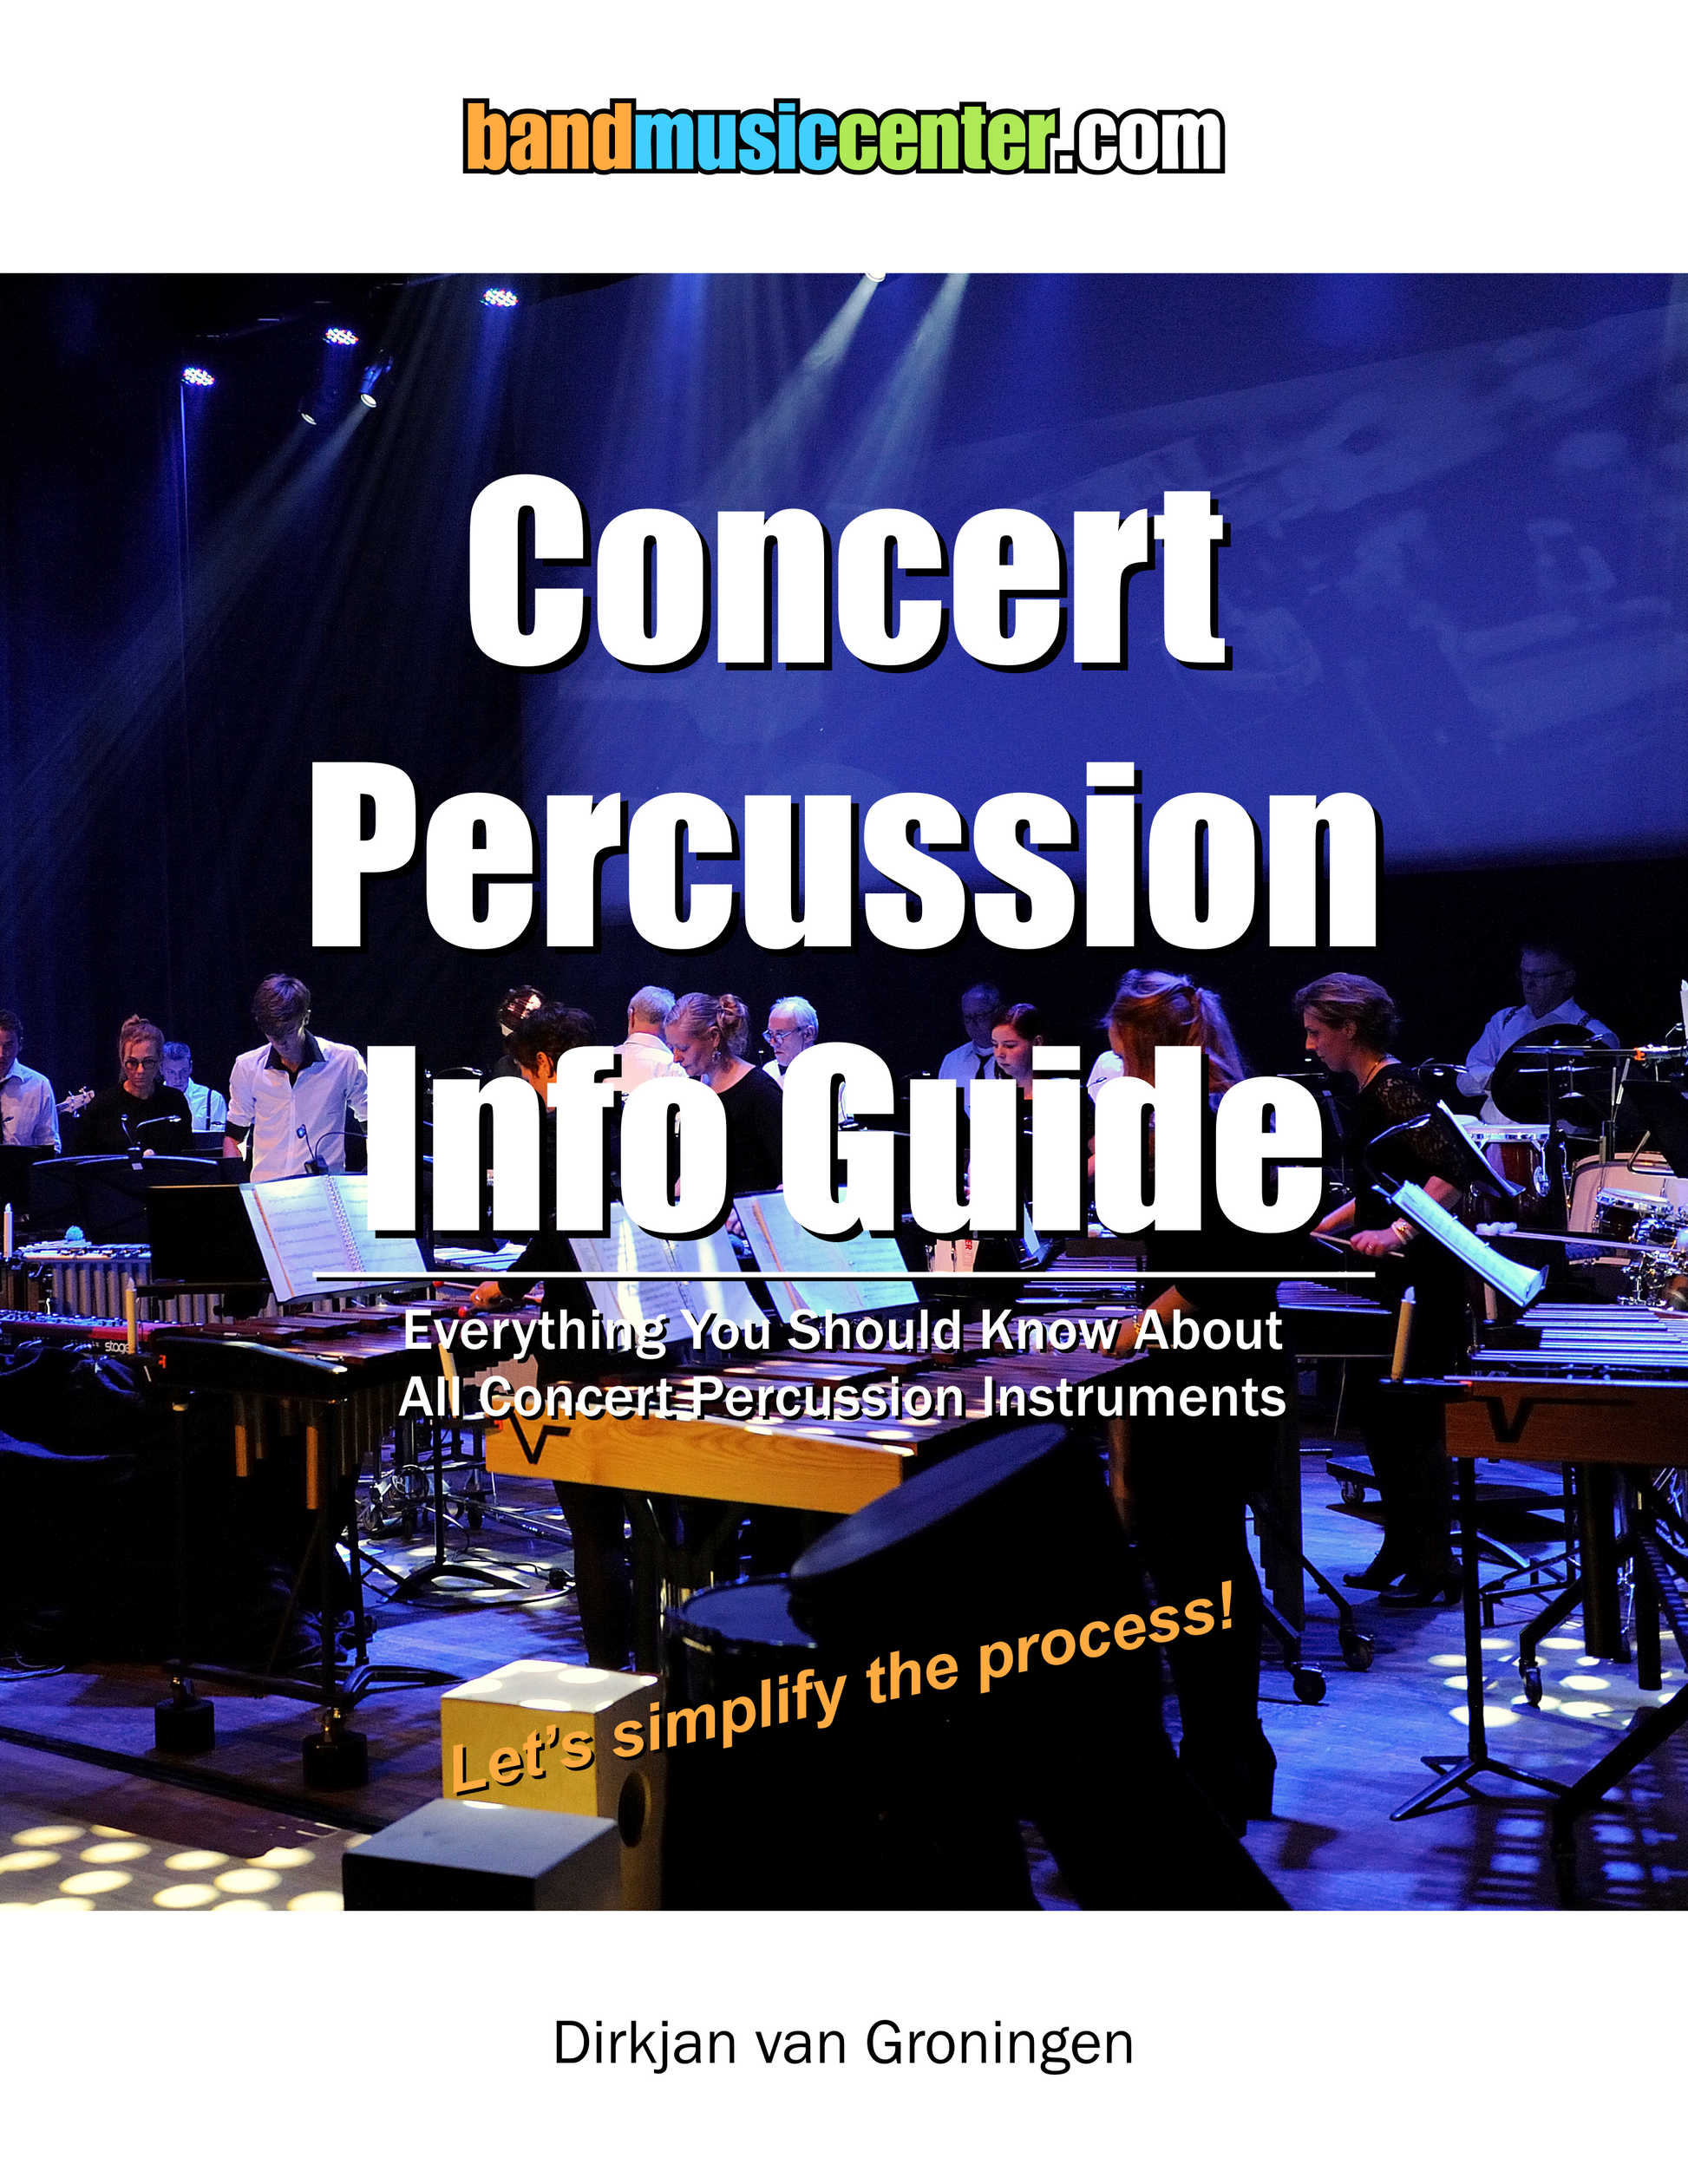 Concert Percussion Info Guide | Dirkjan van Groningen